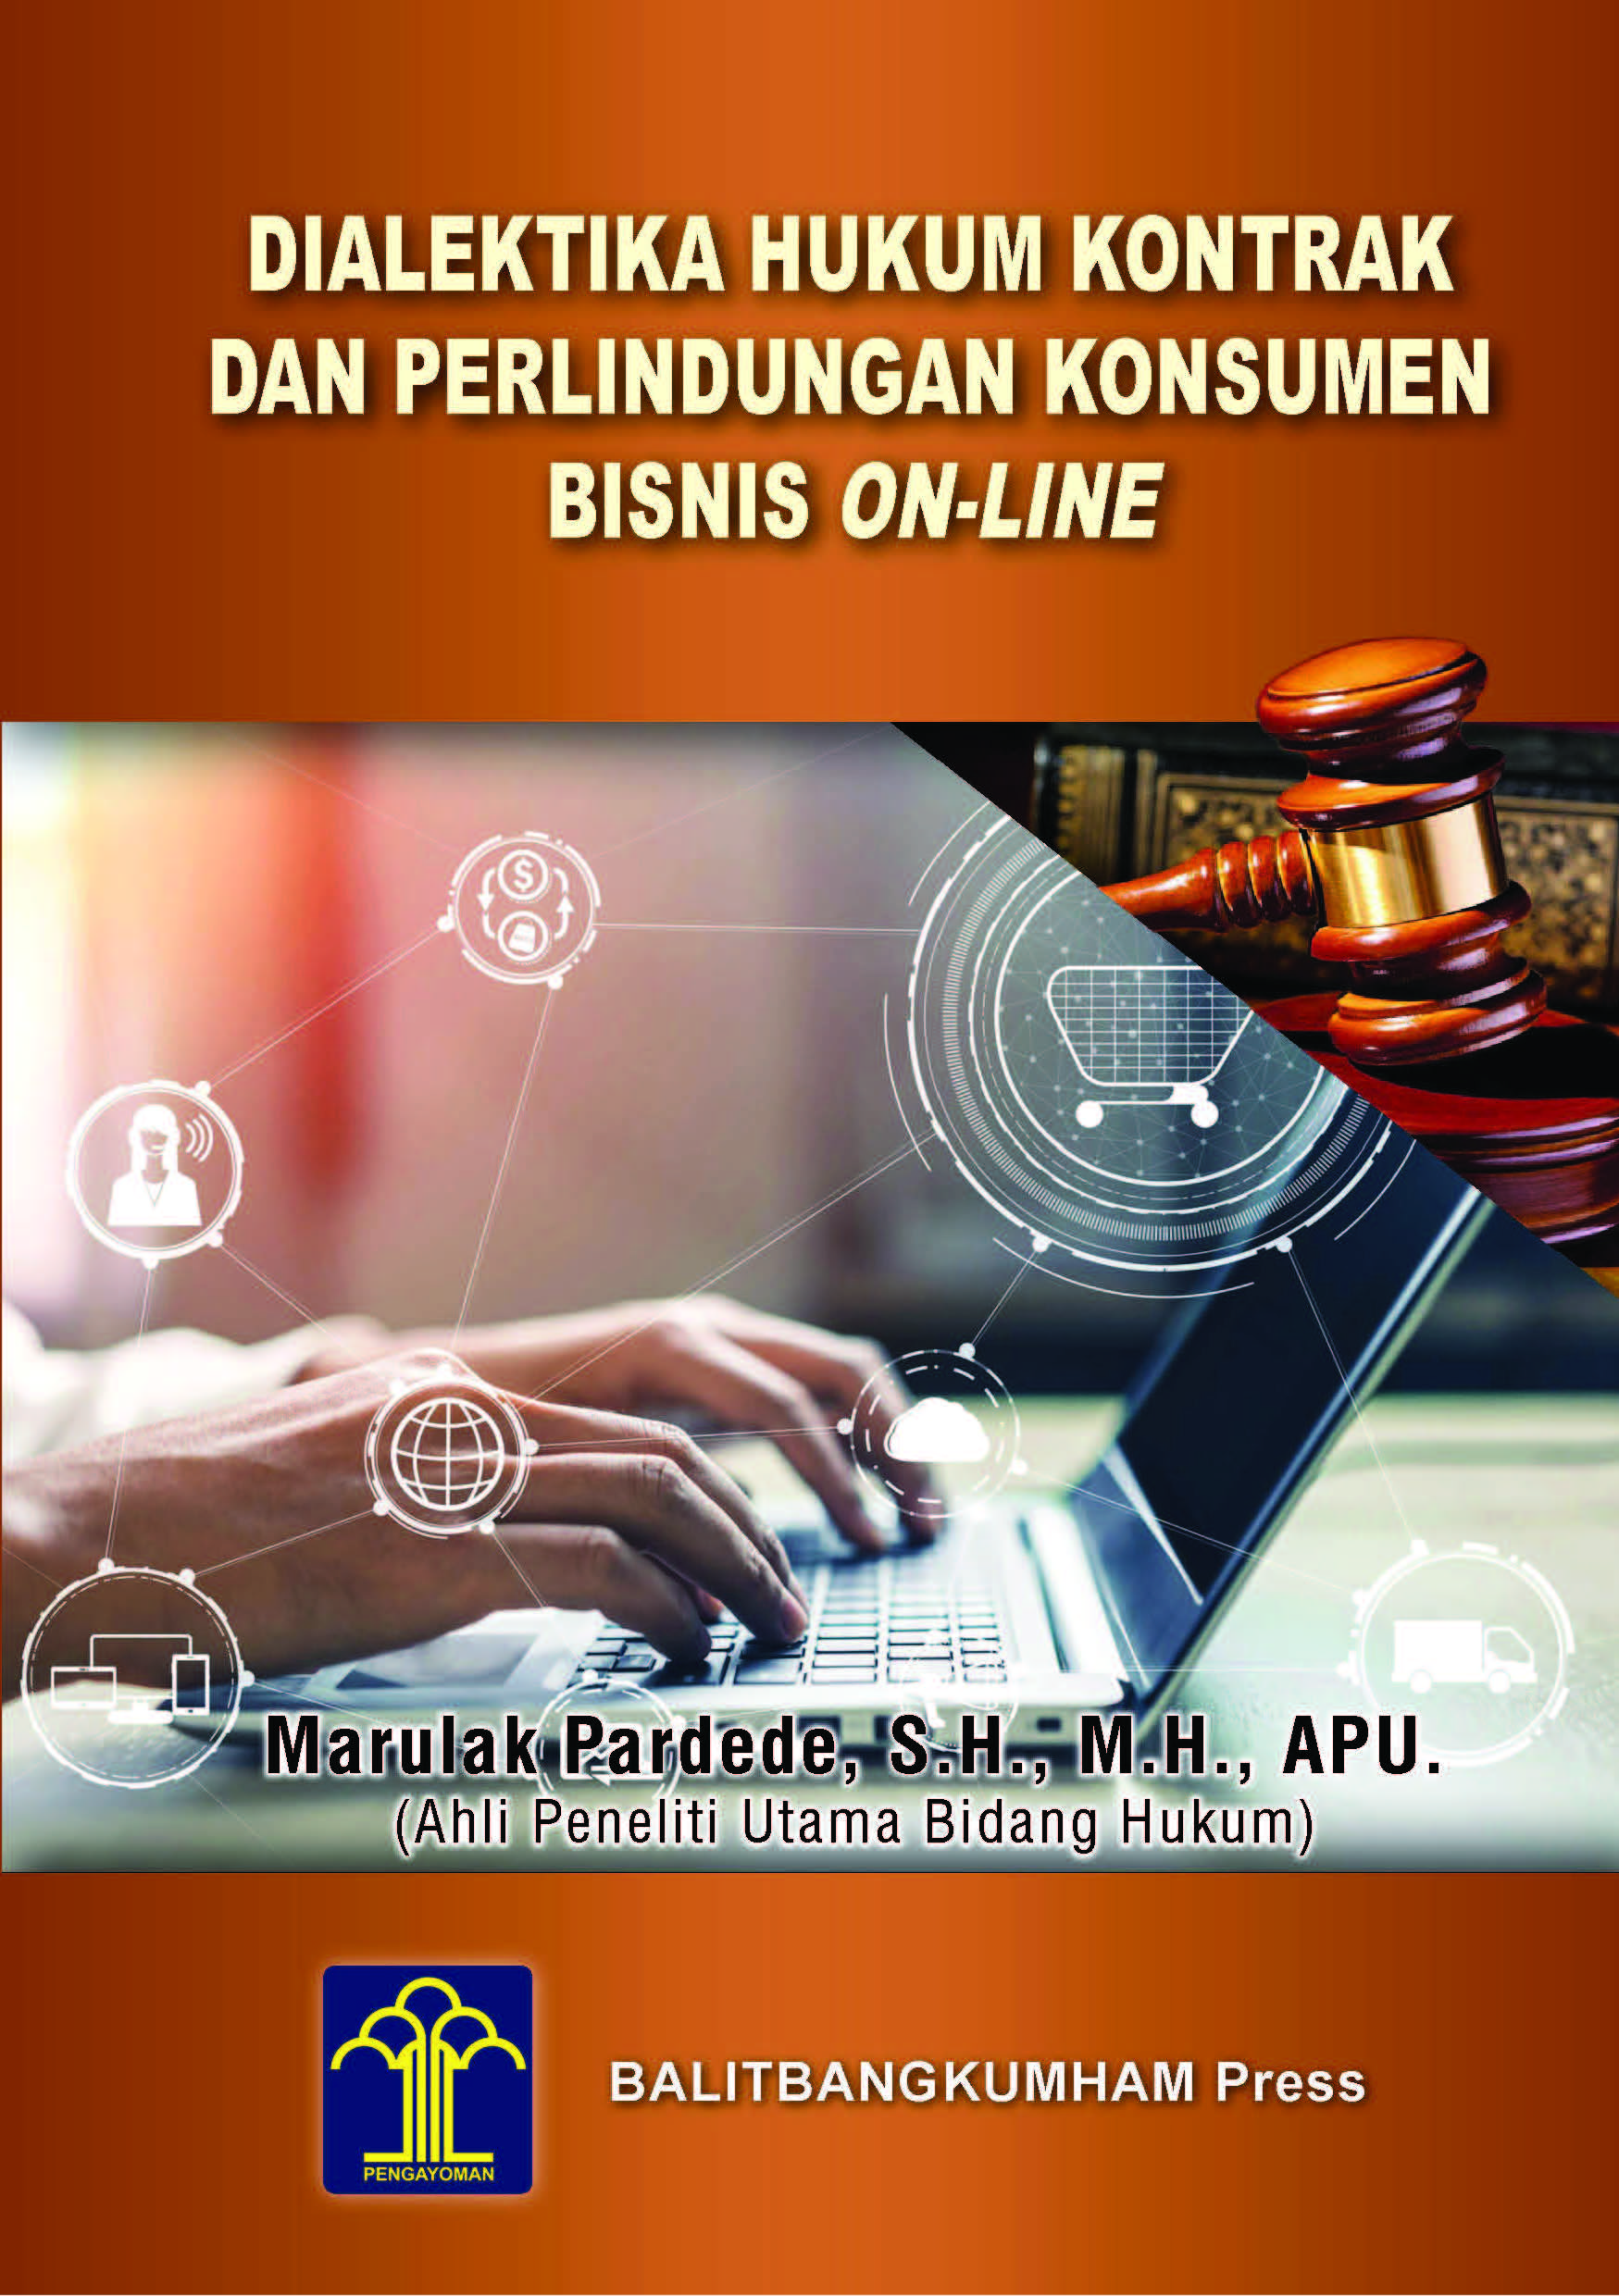 Dialektika hukum kontrak dan perlindungan konsumen bisnis on-line